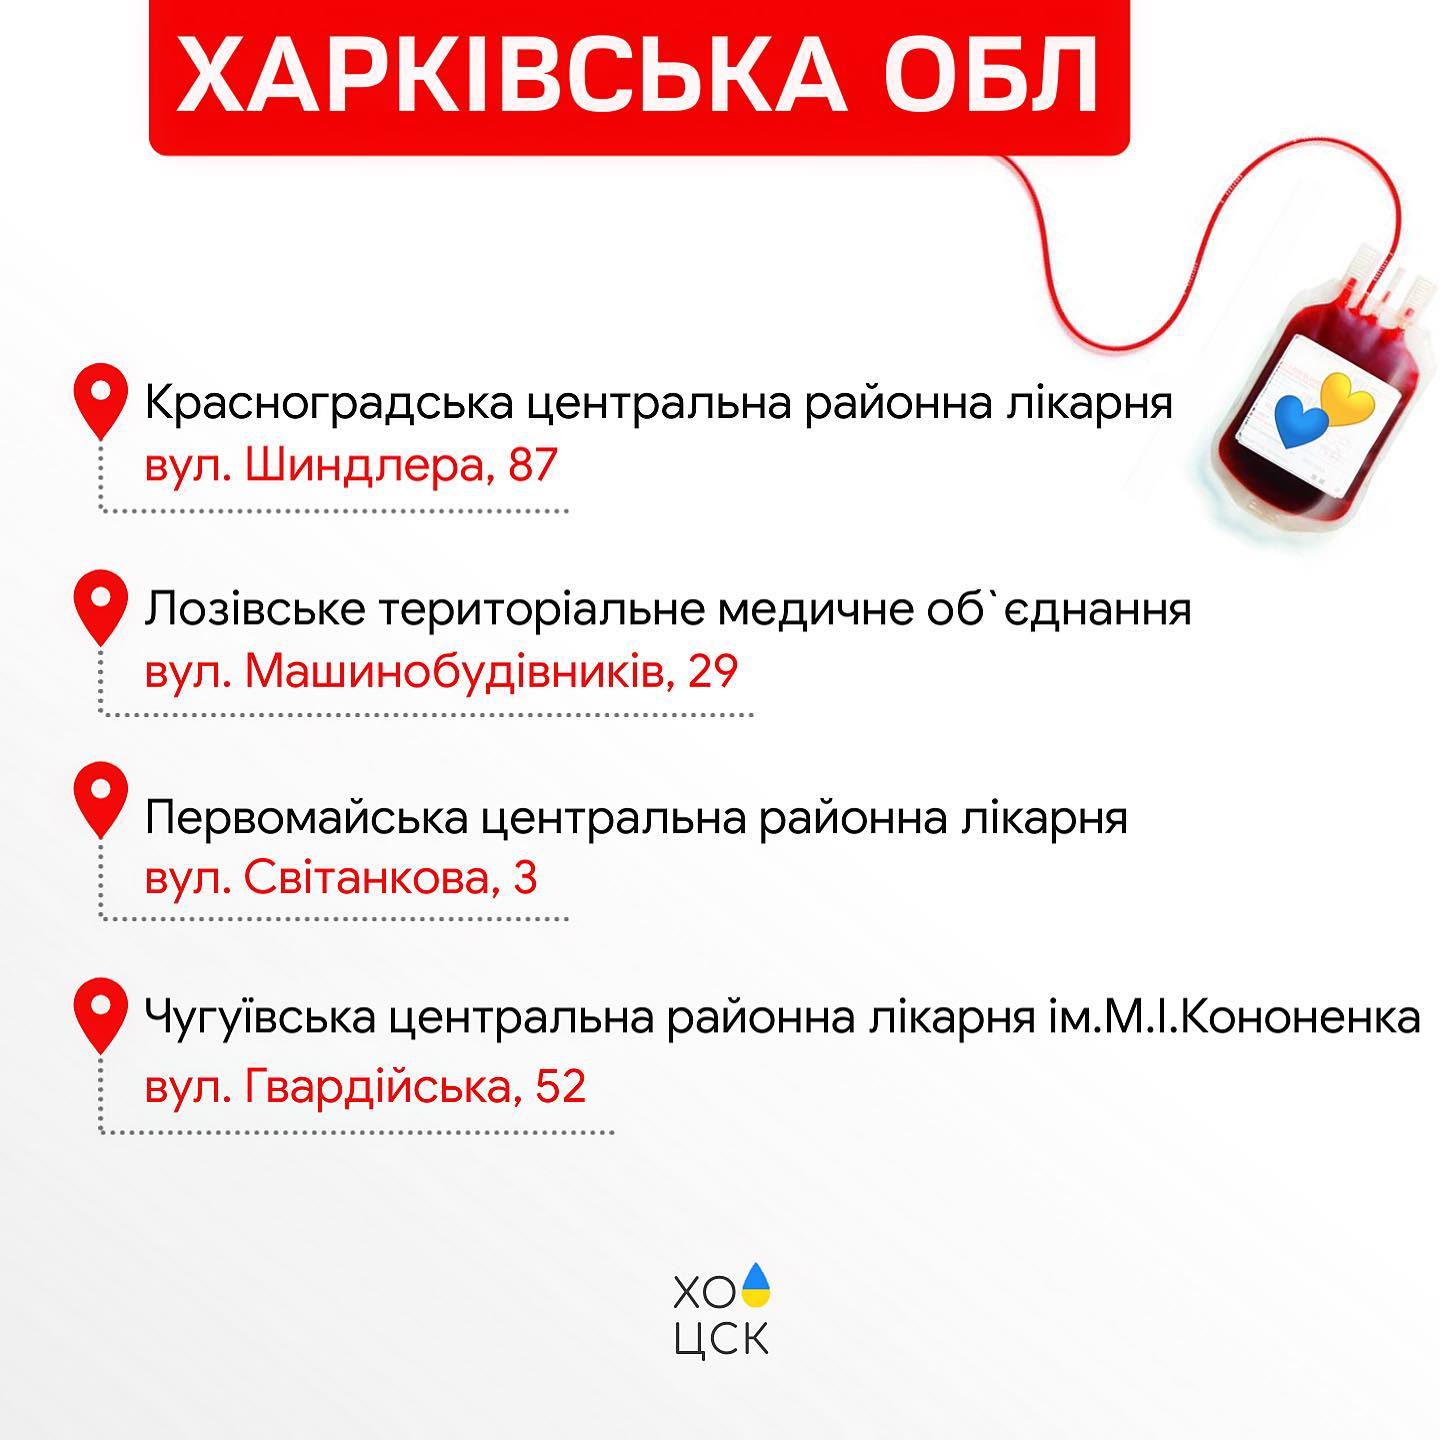 Графика: Харьковский областной центр службы крови